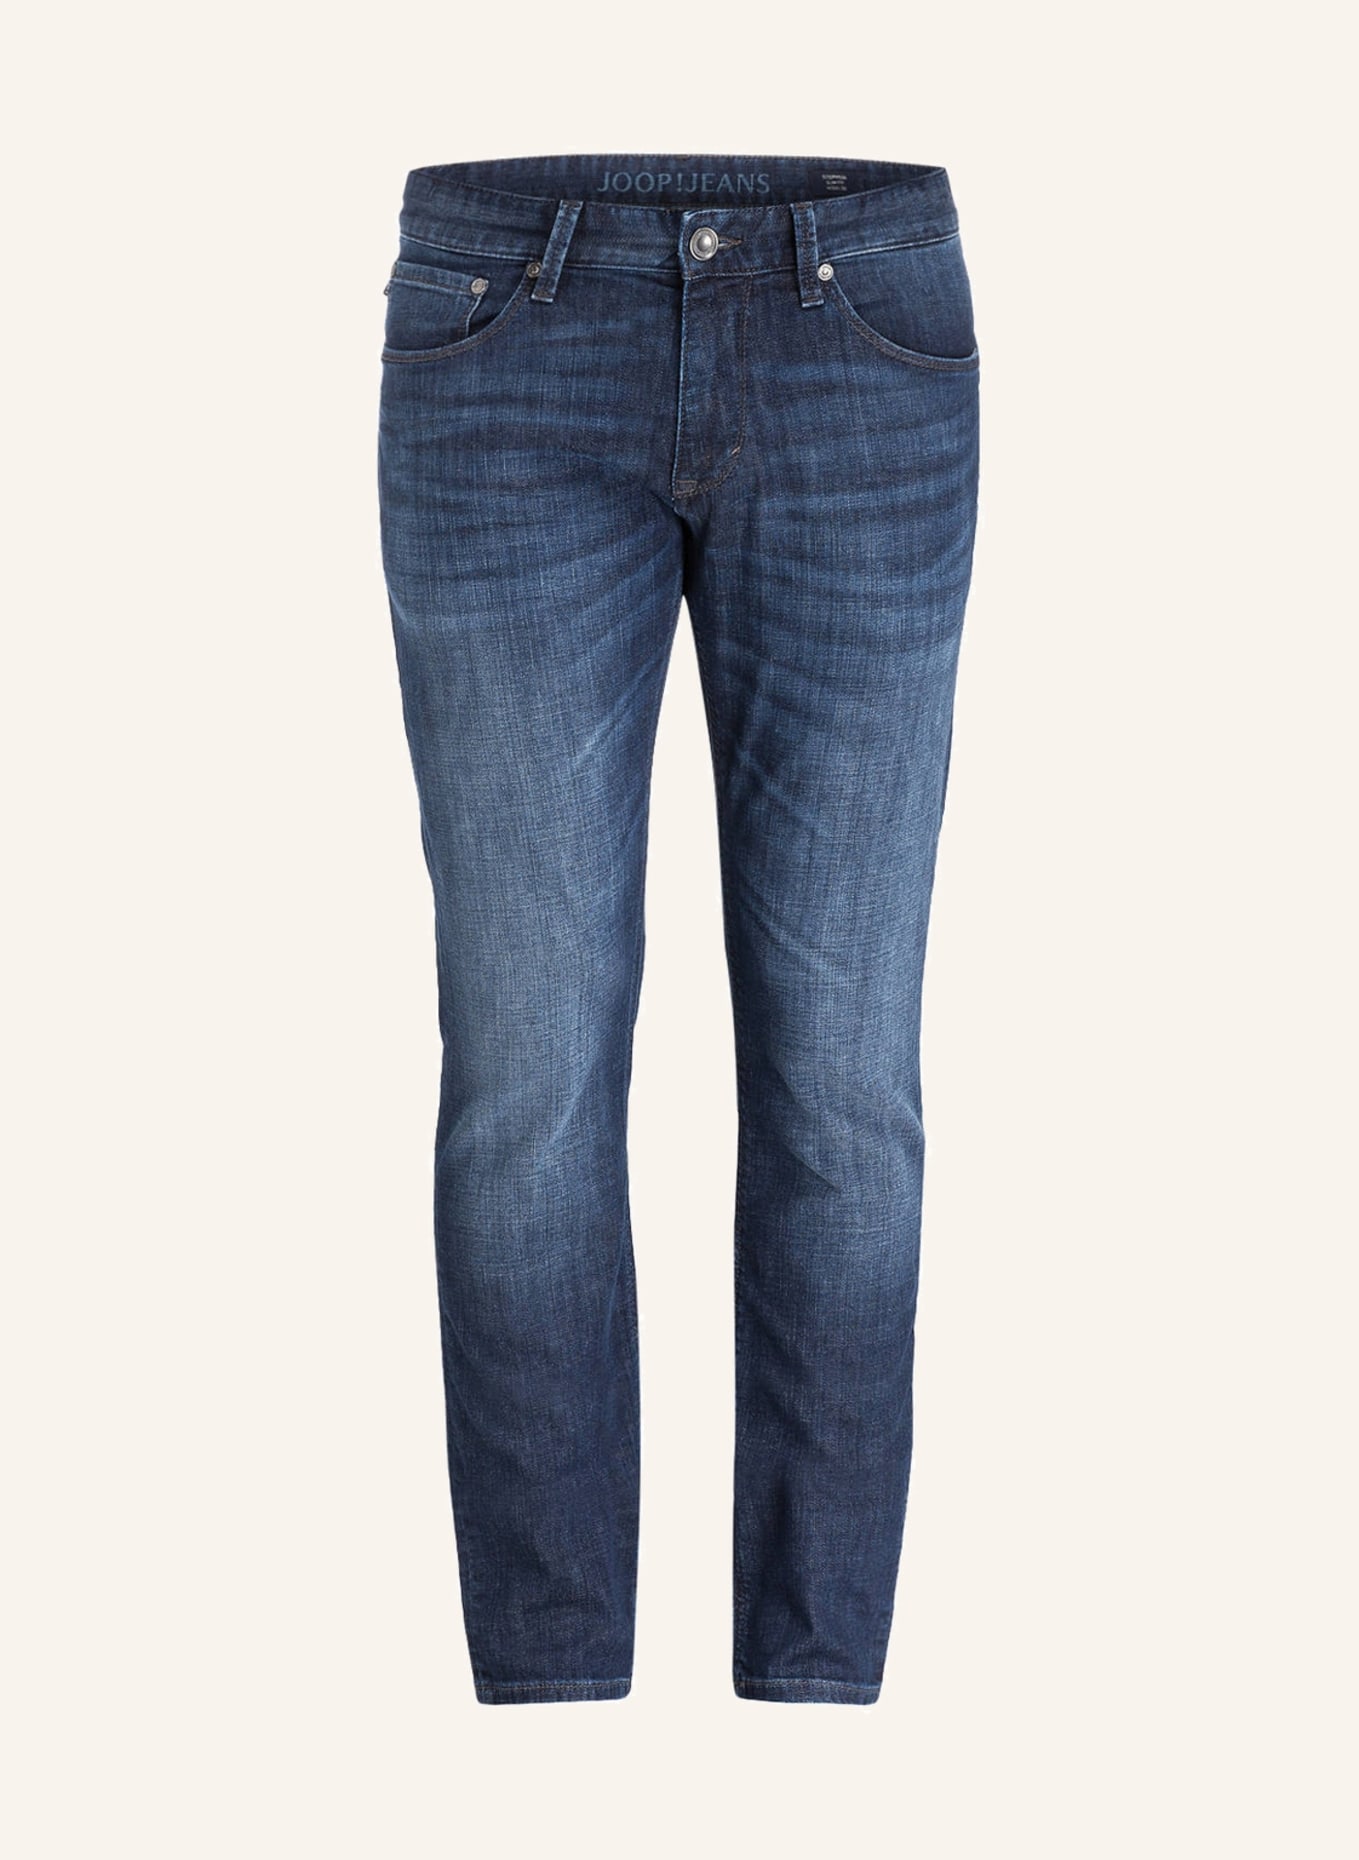 JOOP! Jeans STEPHEN Slim Fit, Farbe: 415 NAVY (Bild 1)